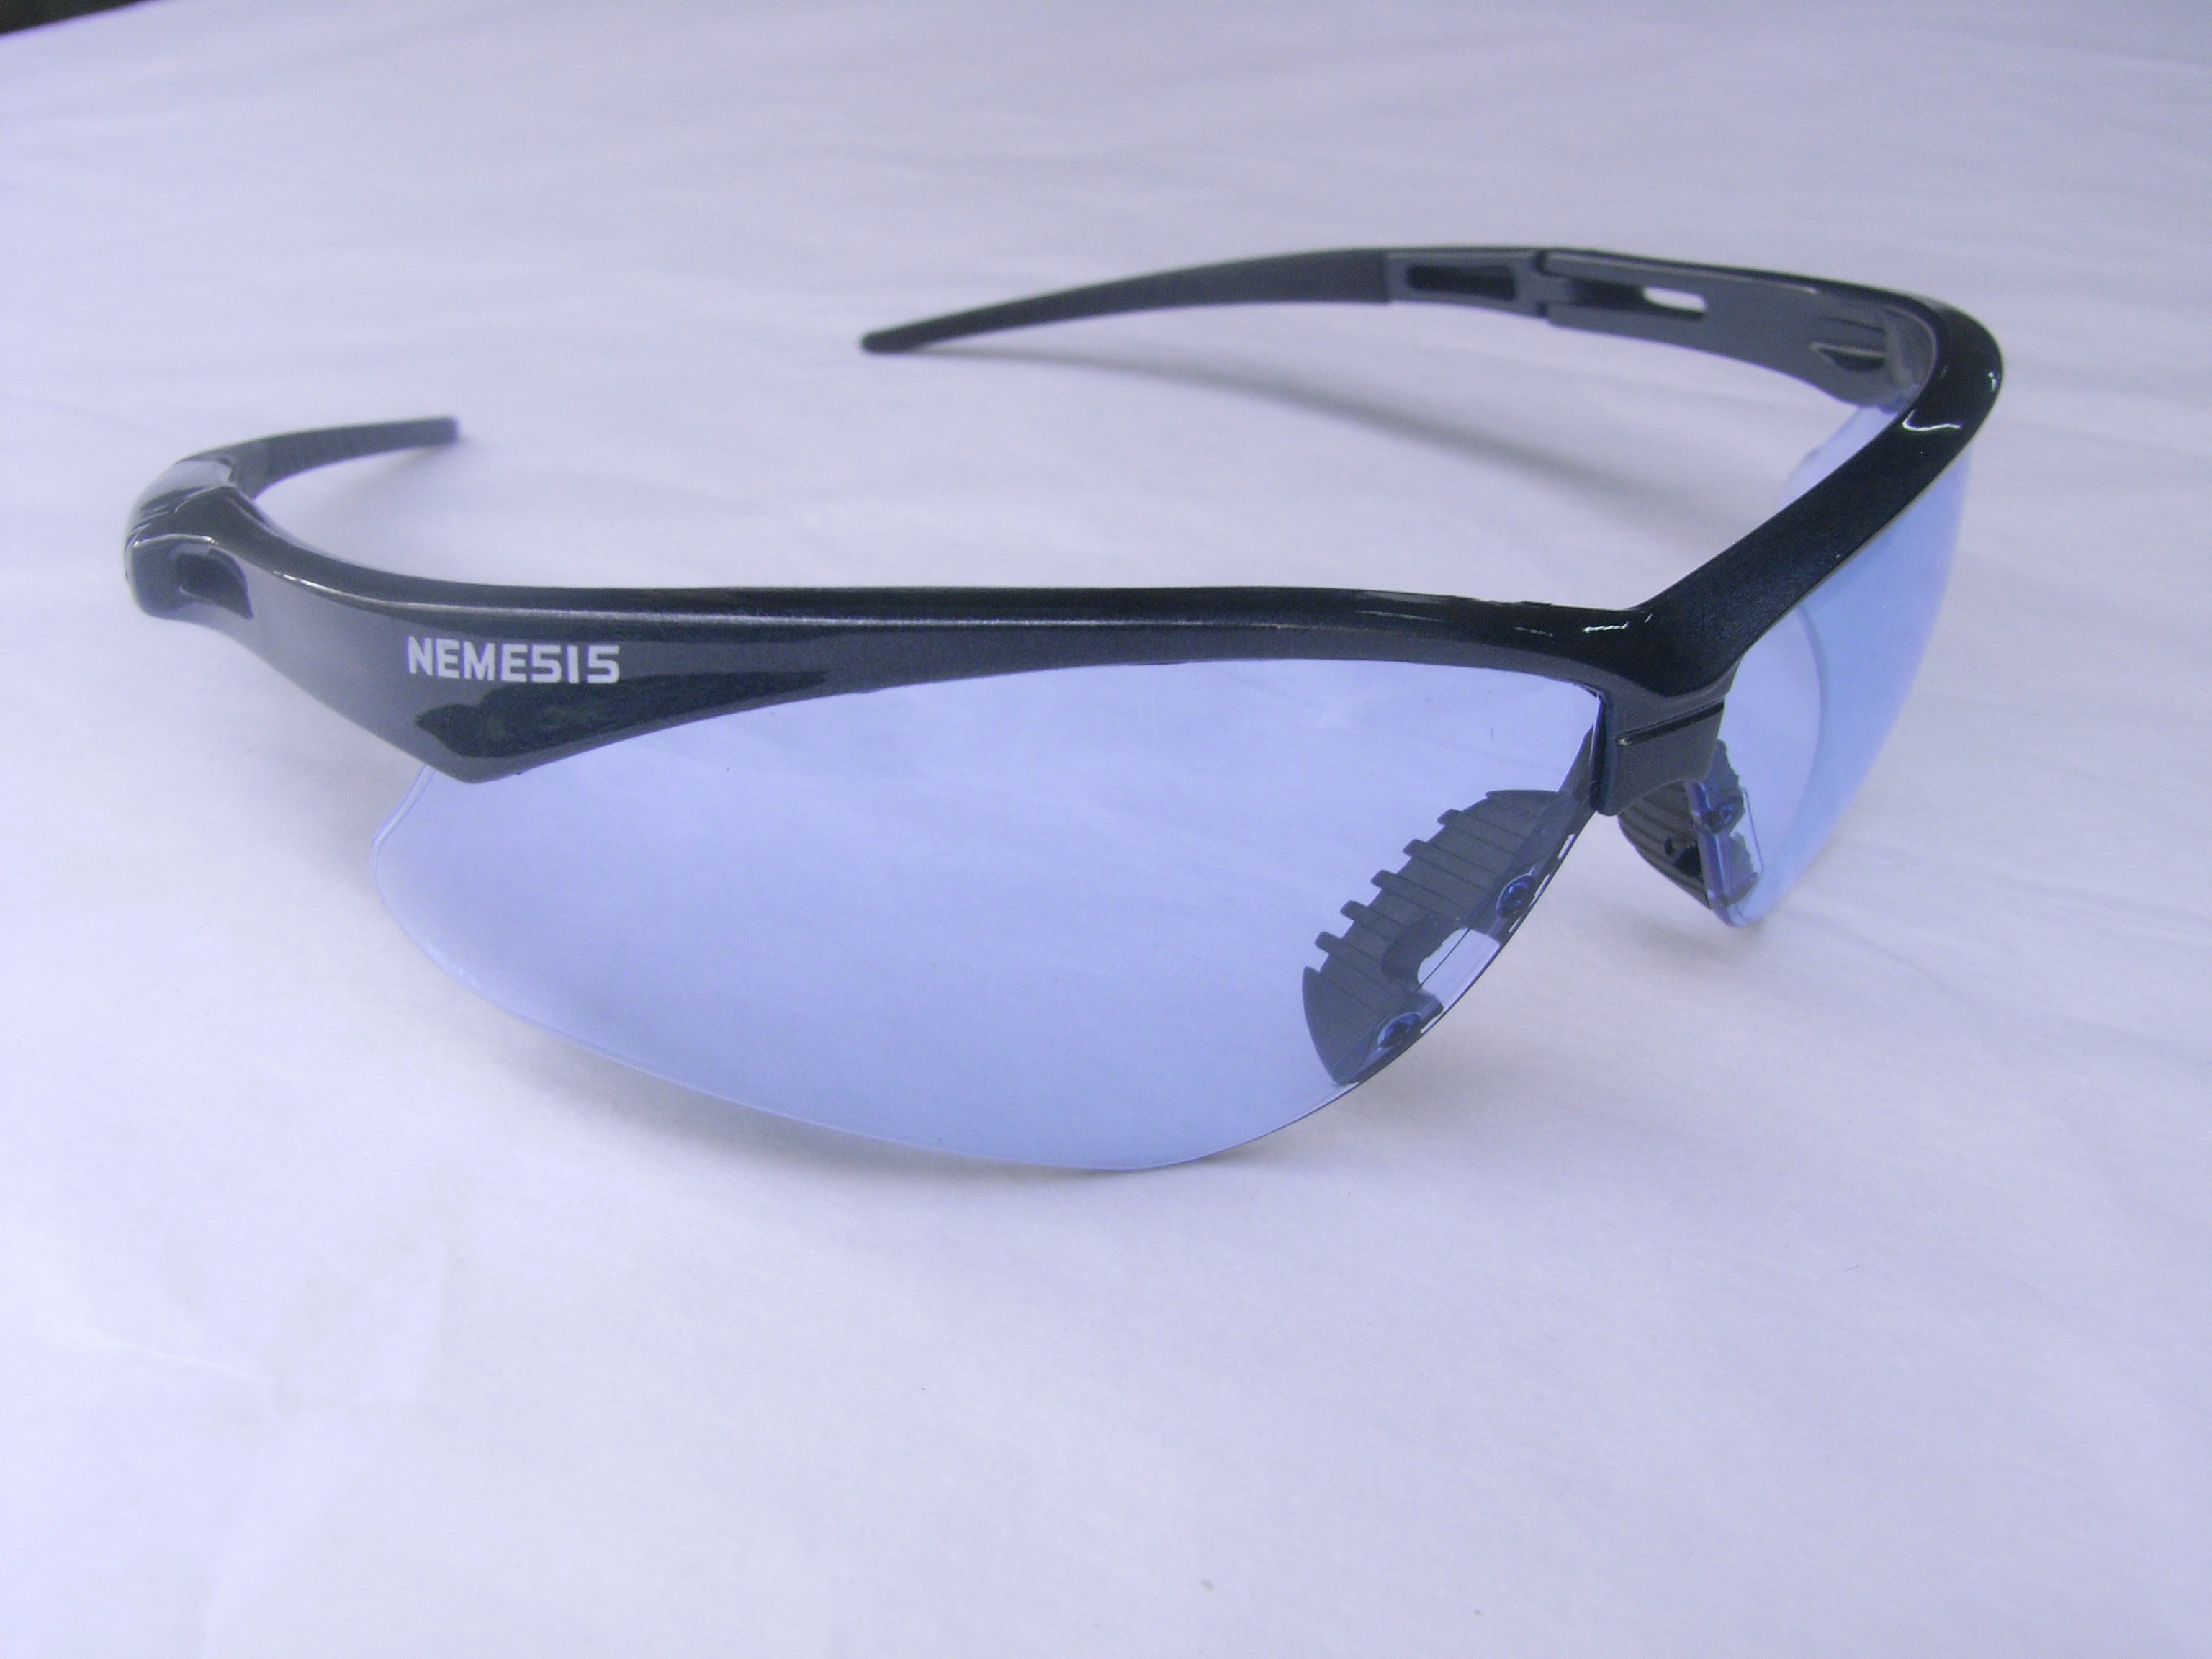 แว่นตาเซฟตี้ , แว่นตากันสะเก็ด , แว่นตา NEMESIS BLUE FRAME LIGHT BLUE LENS SAFETY GLASSES 2